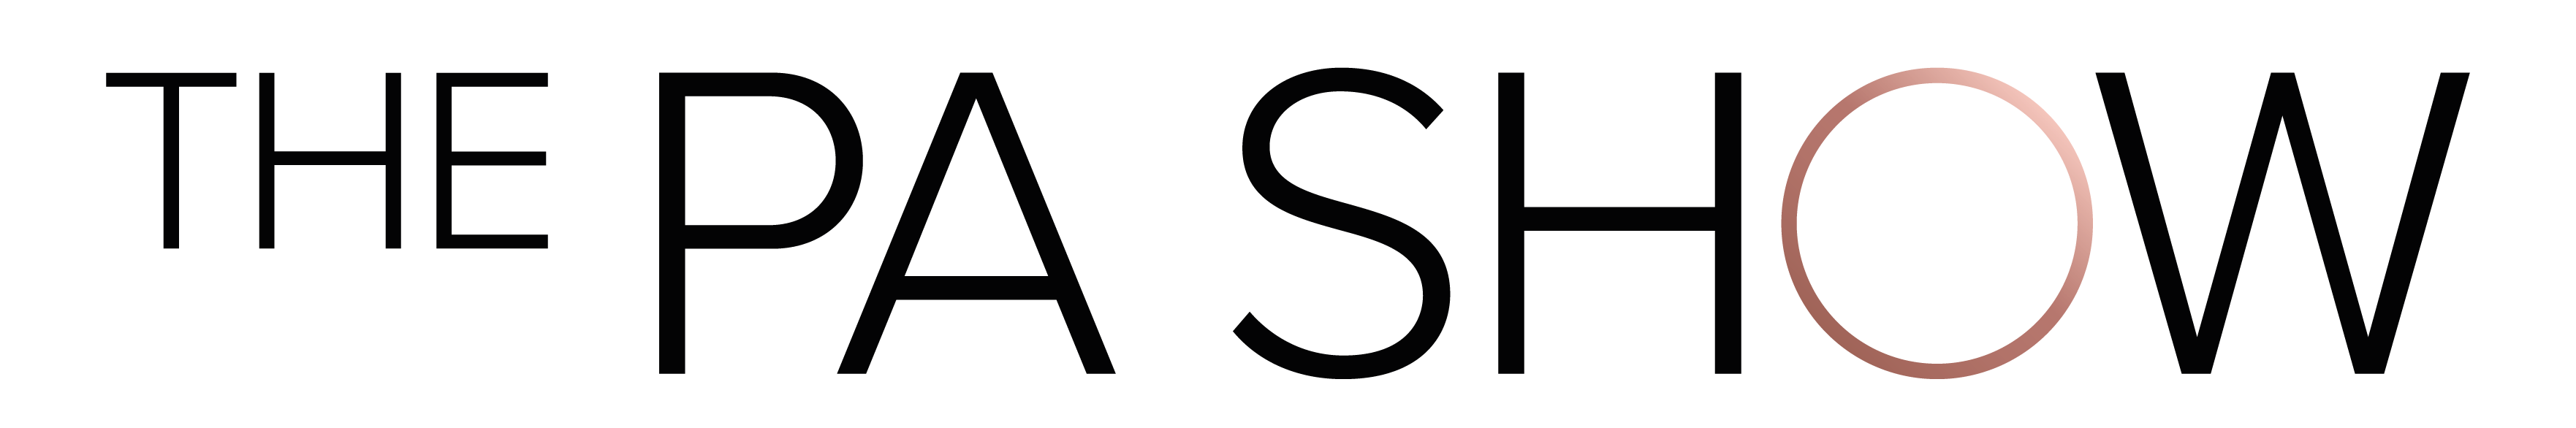 pa show logo